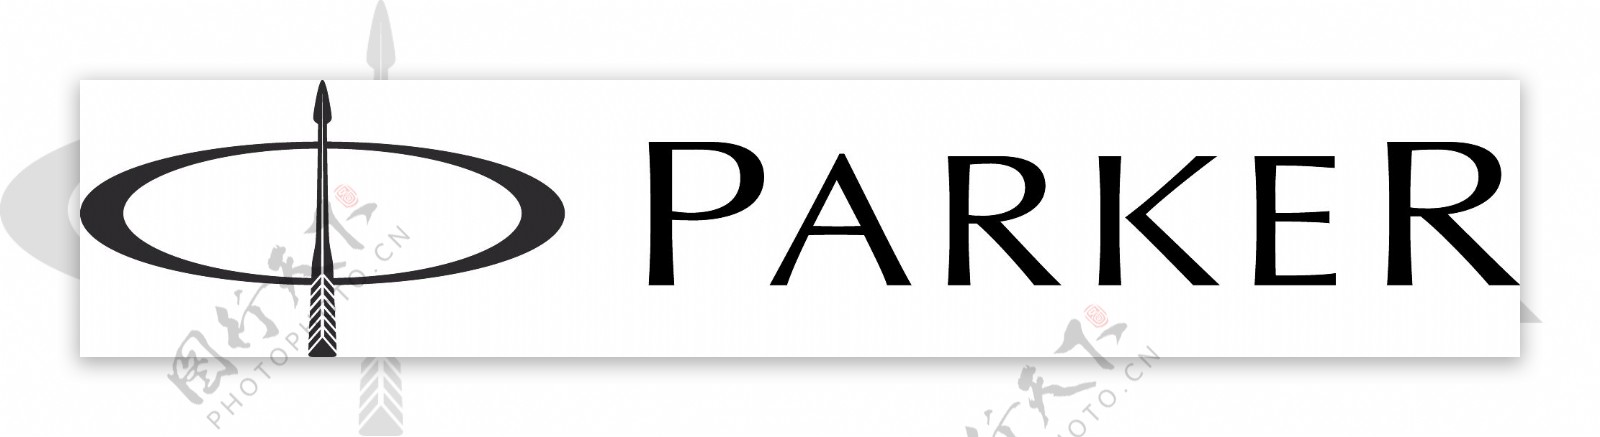 parker标志图片